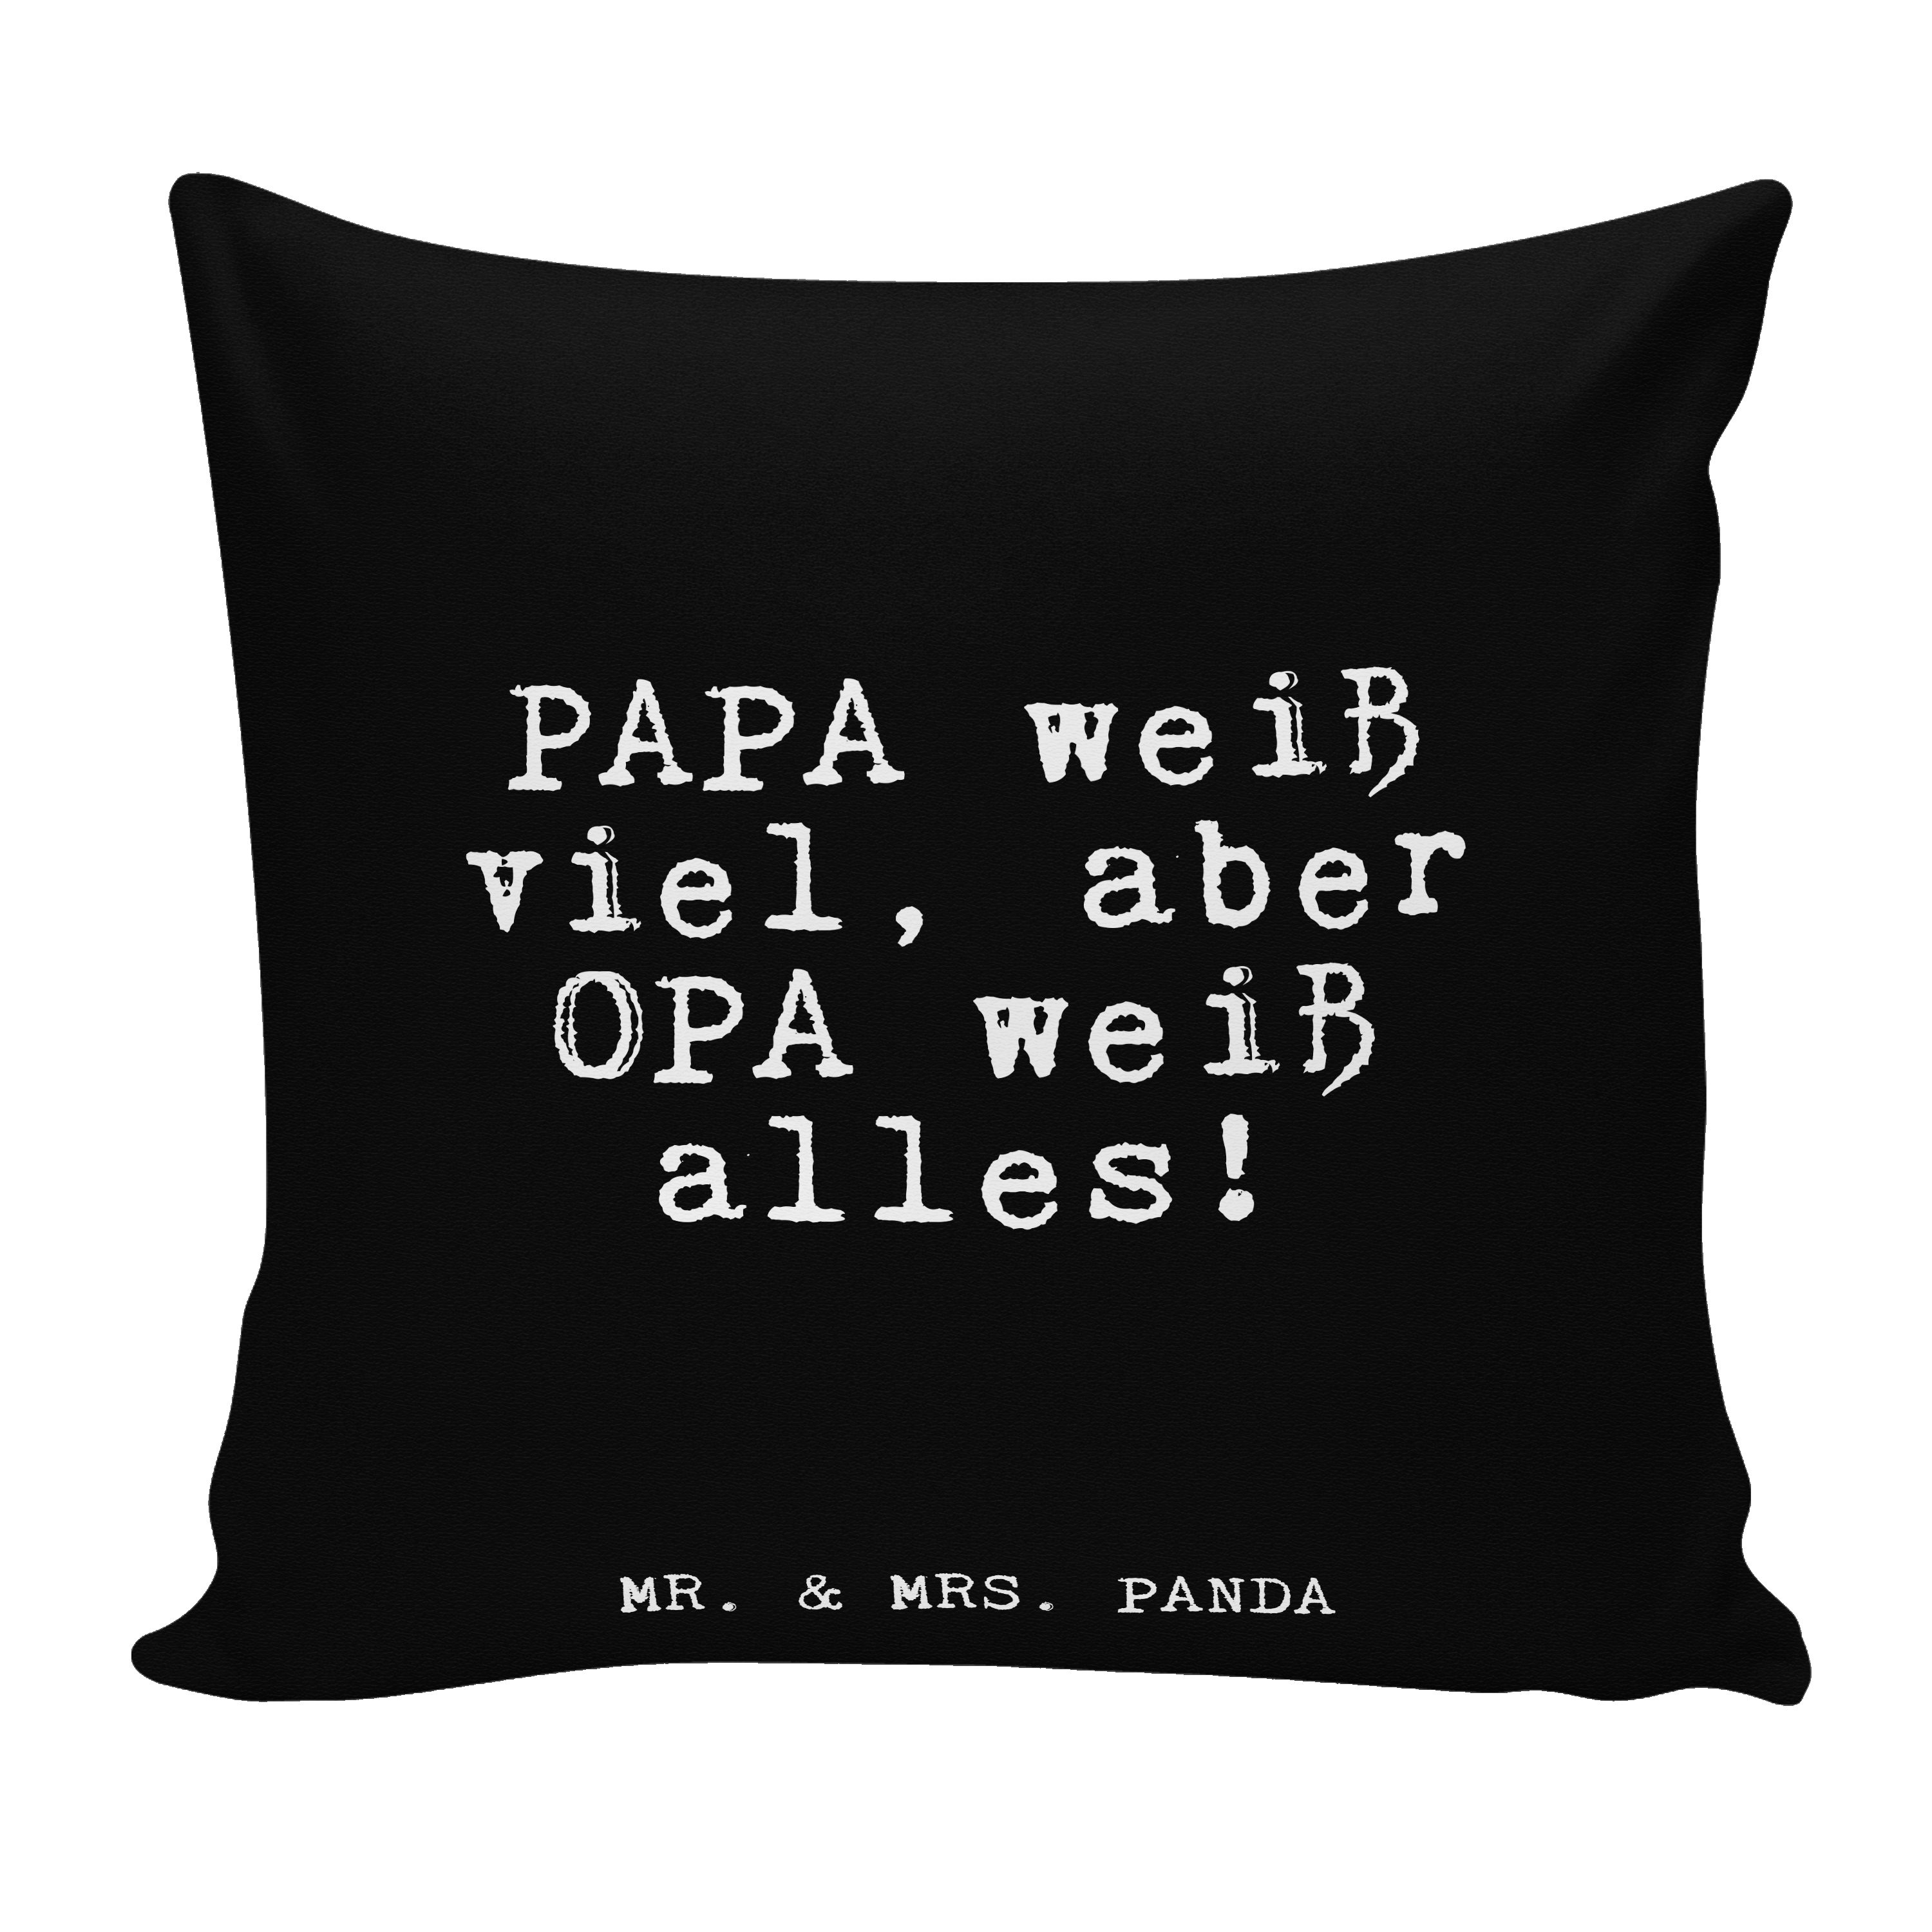 Mr. & Mrs. Panda Dekokissen PAPA weiß viel, aber... - Schwarz - Geschenk, Großeltern, Motivkissen